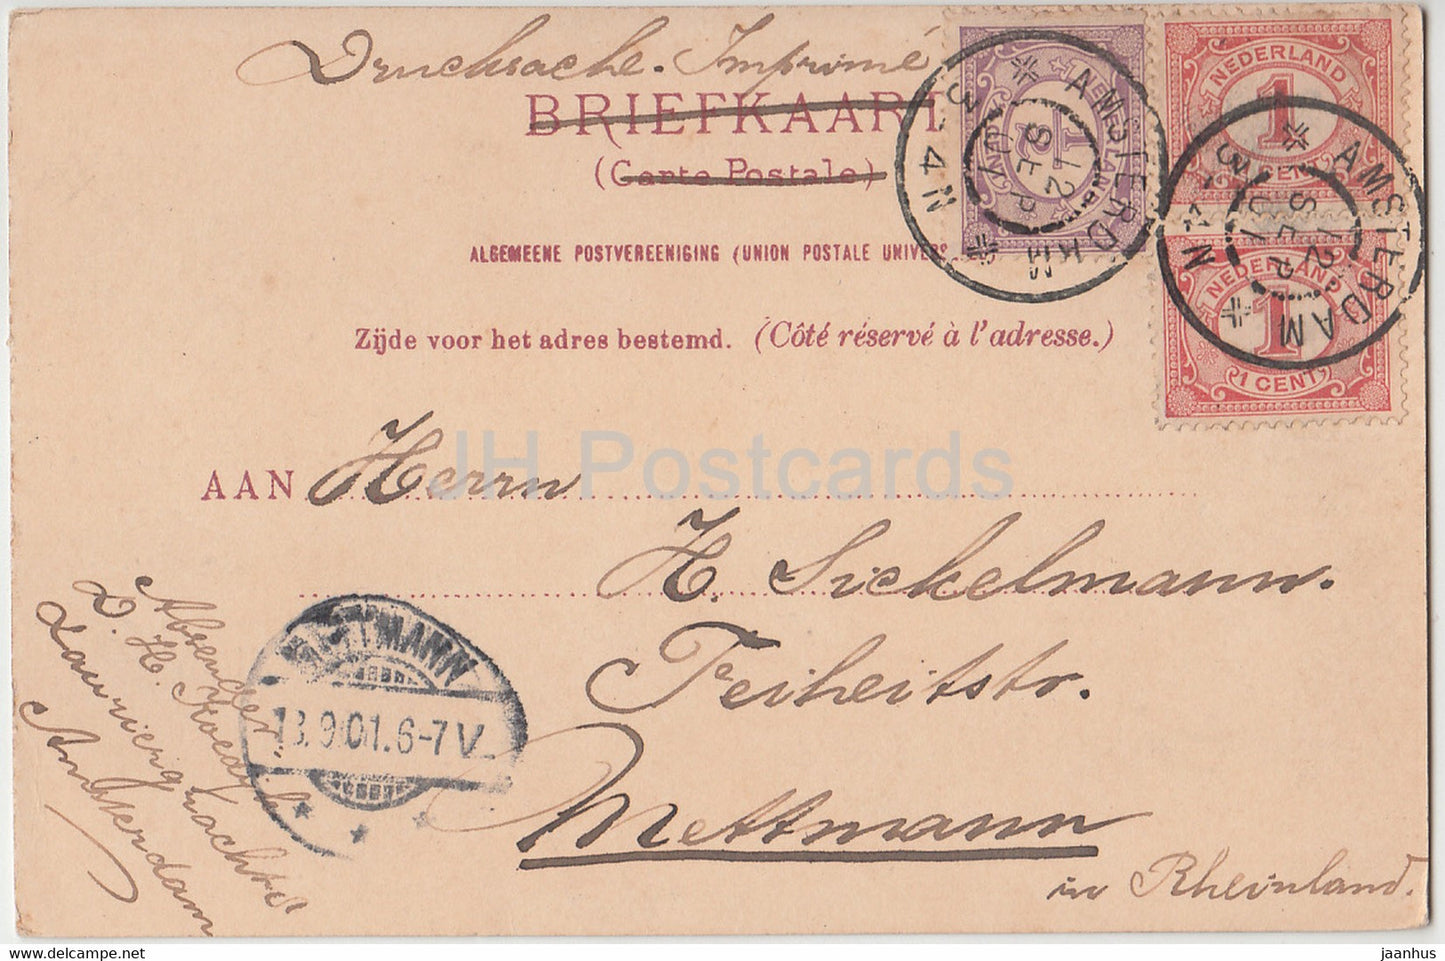 Amsterdam - Ygracht - navire - carte postale ancienne - 1901 - Pays-Bas - utilisé